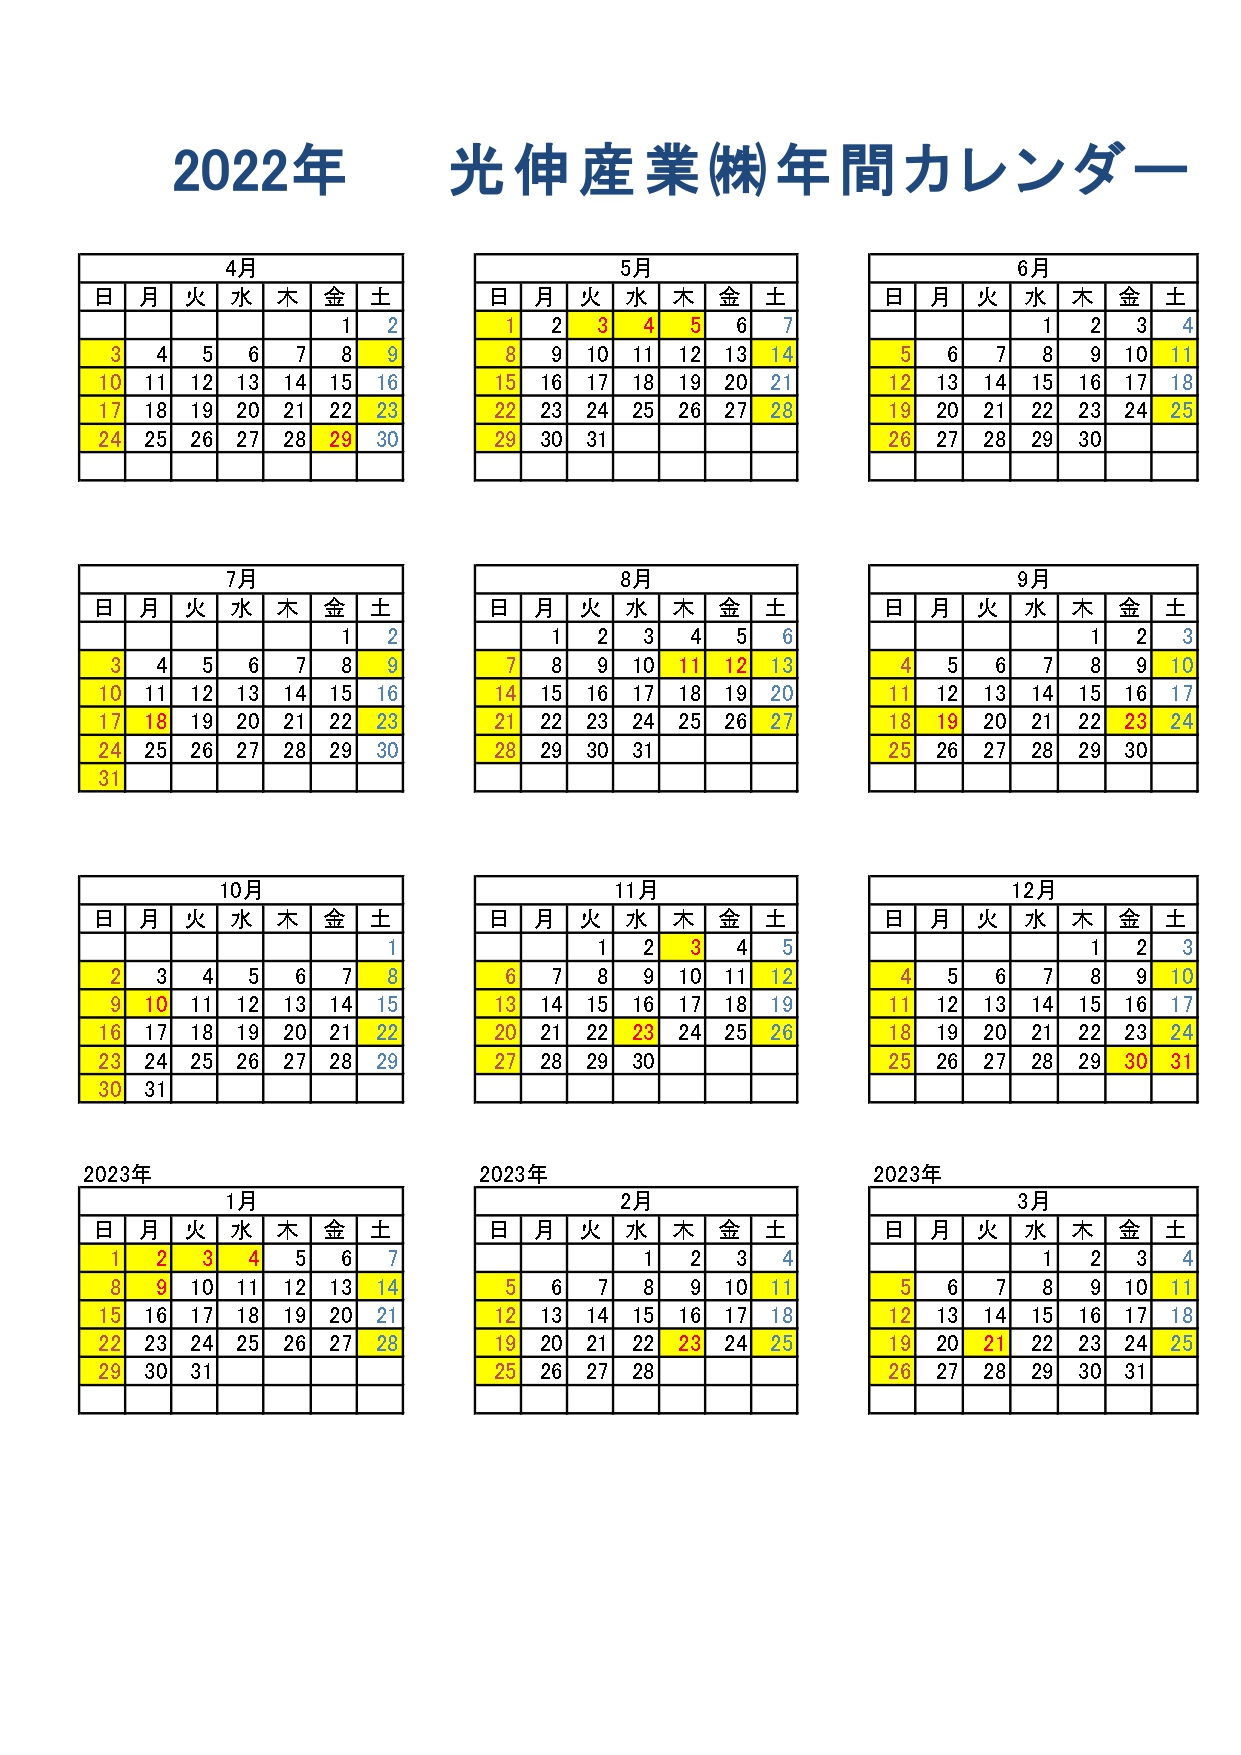 2022-business-days-calendar